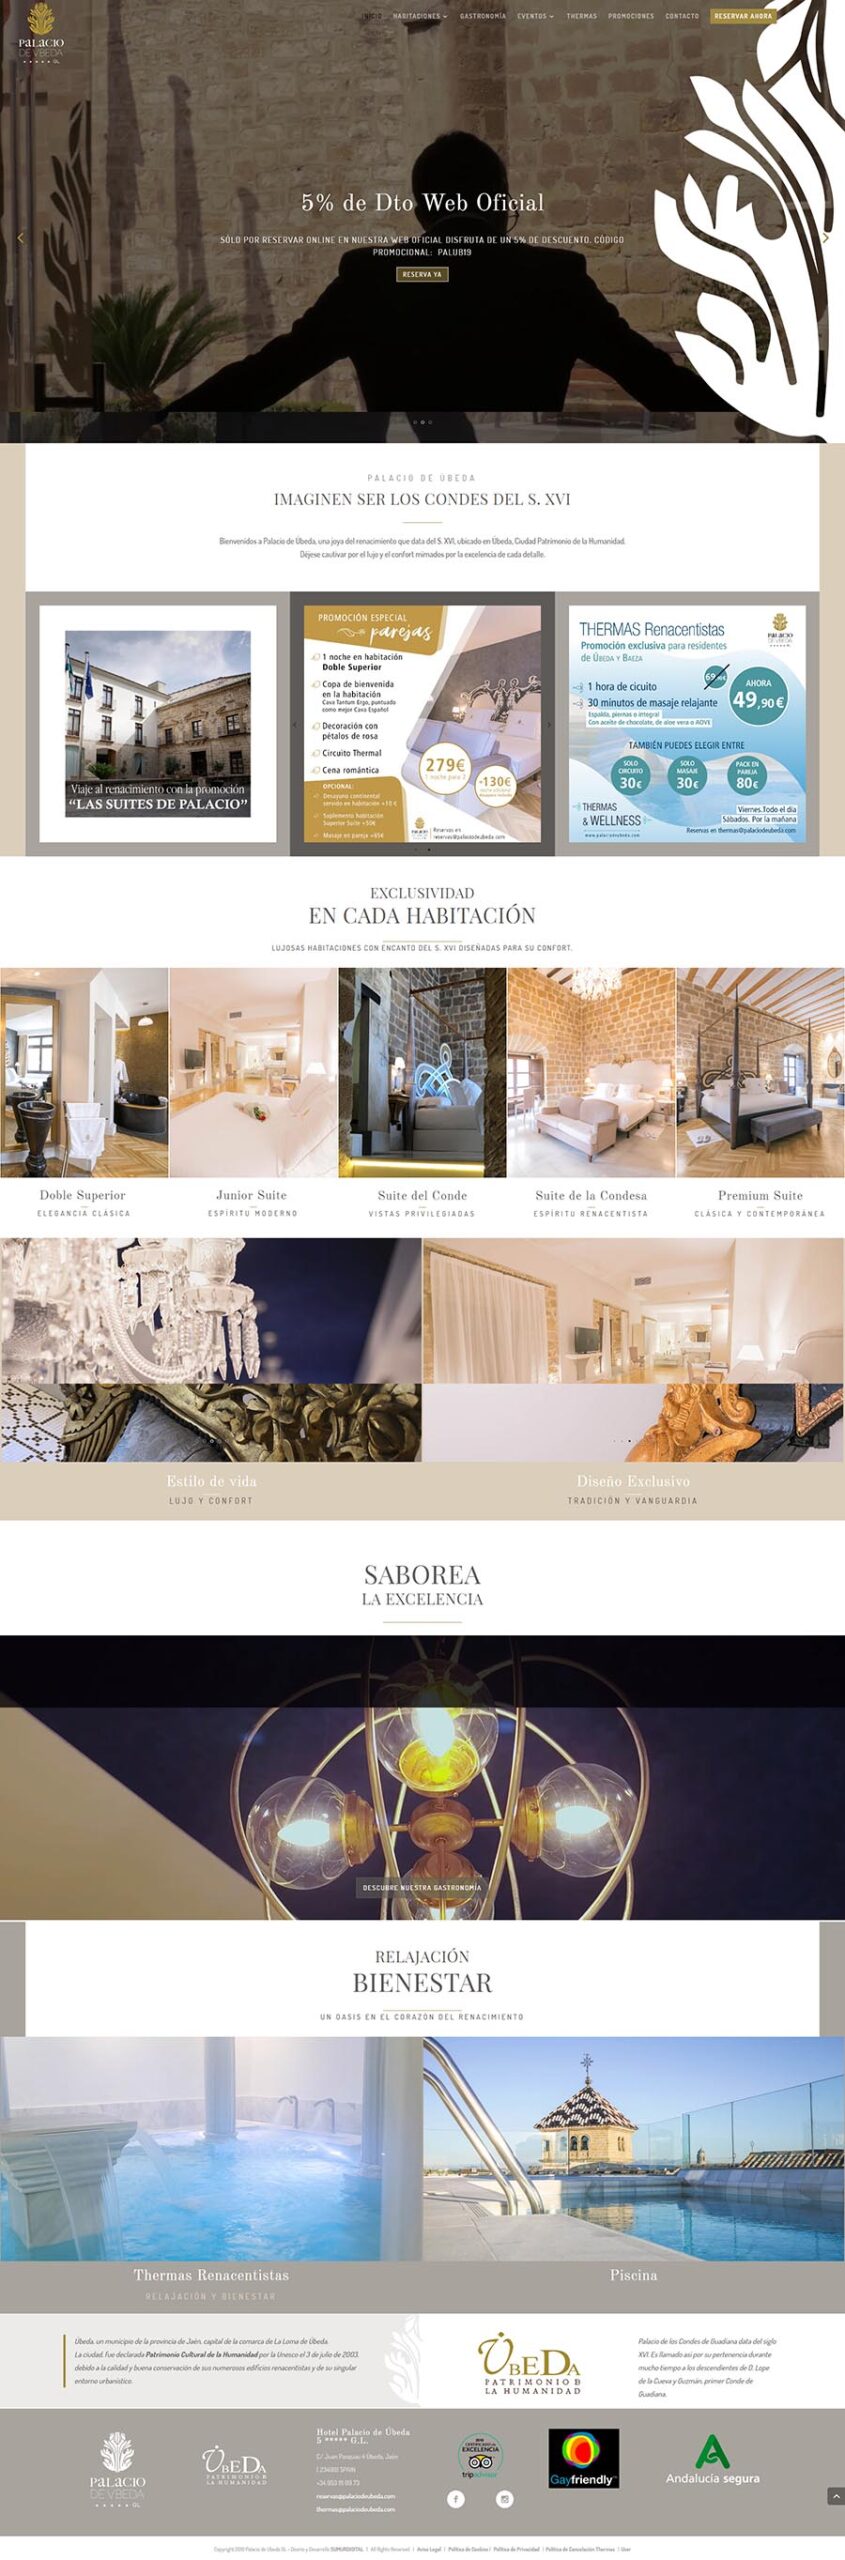 Diseno web Hotel Palacio de Ubeda - 5 estrellas Gran Lujo